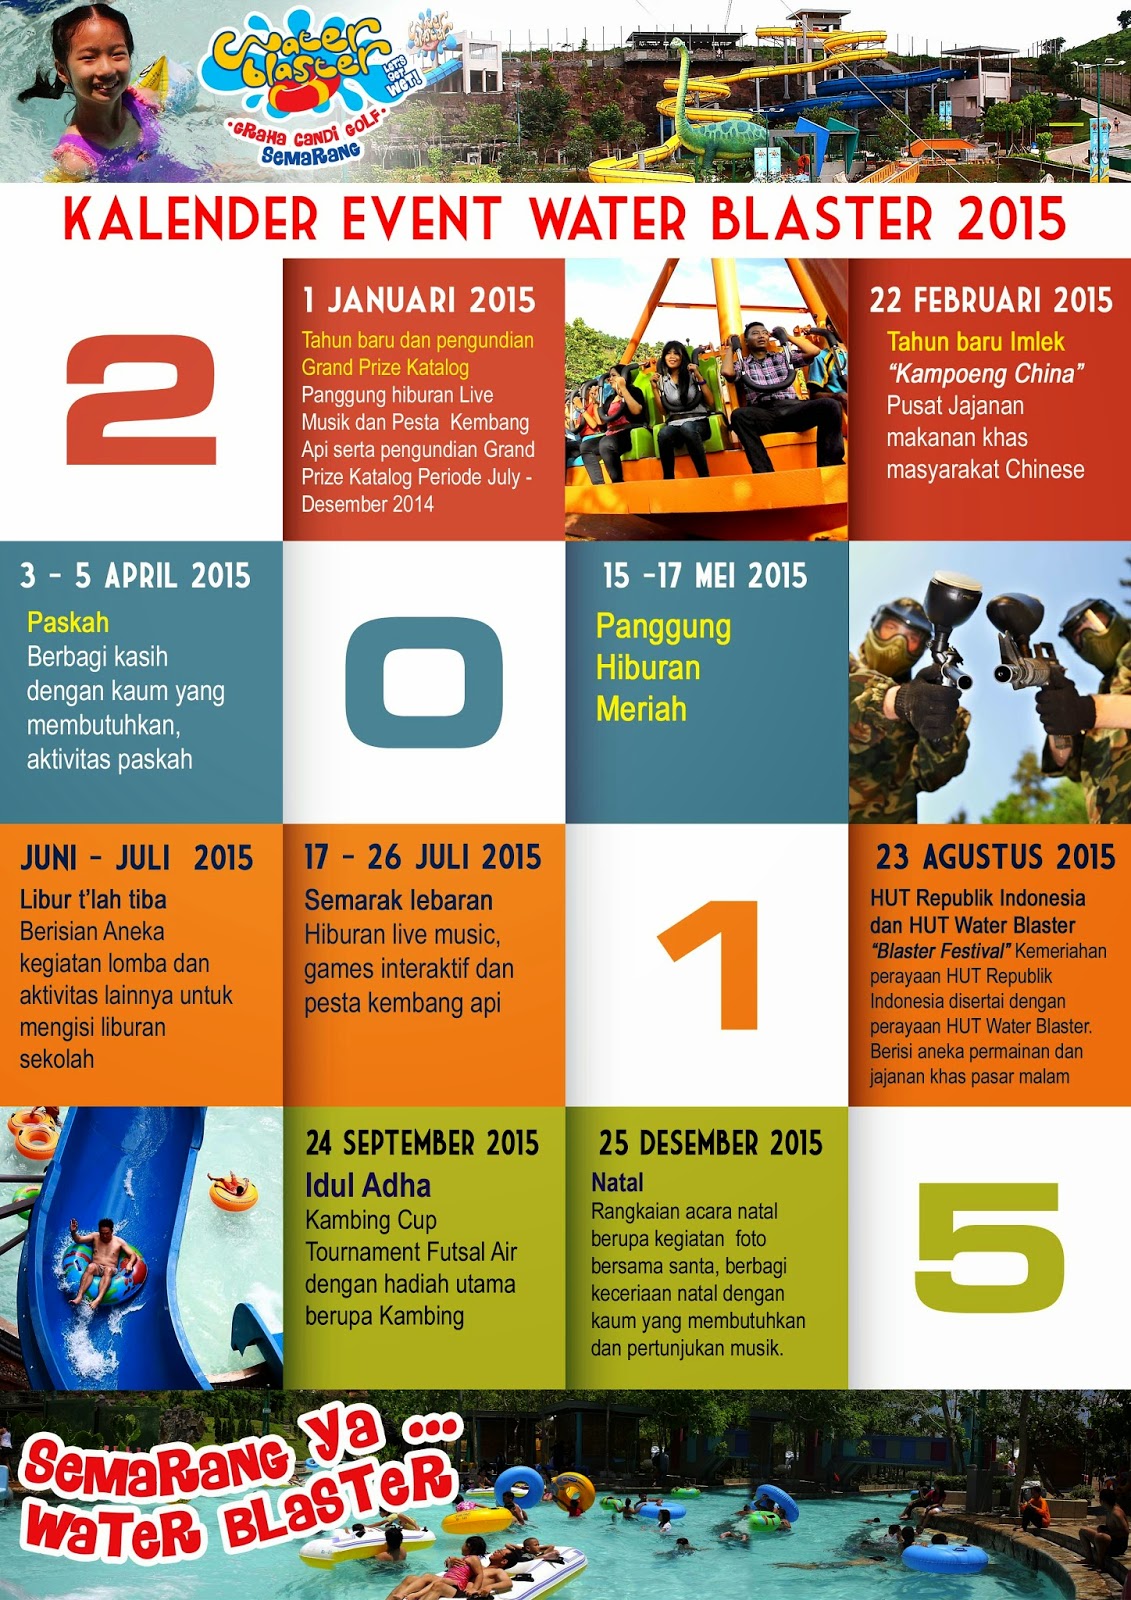  kalender Event Water Blaster 2015  Destinasi Pariwisata Kota Semarang